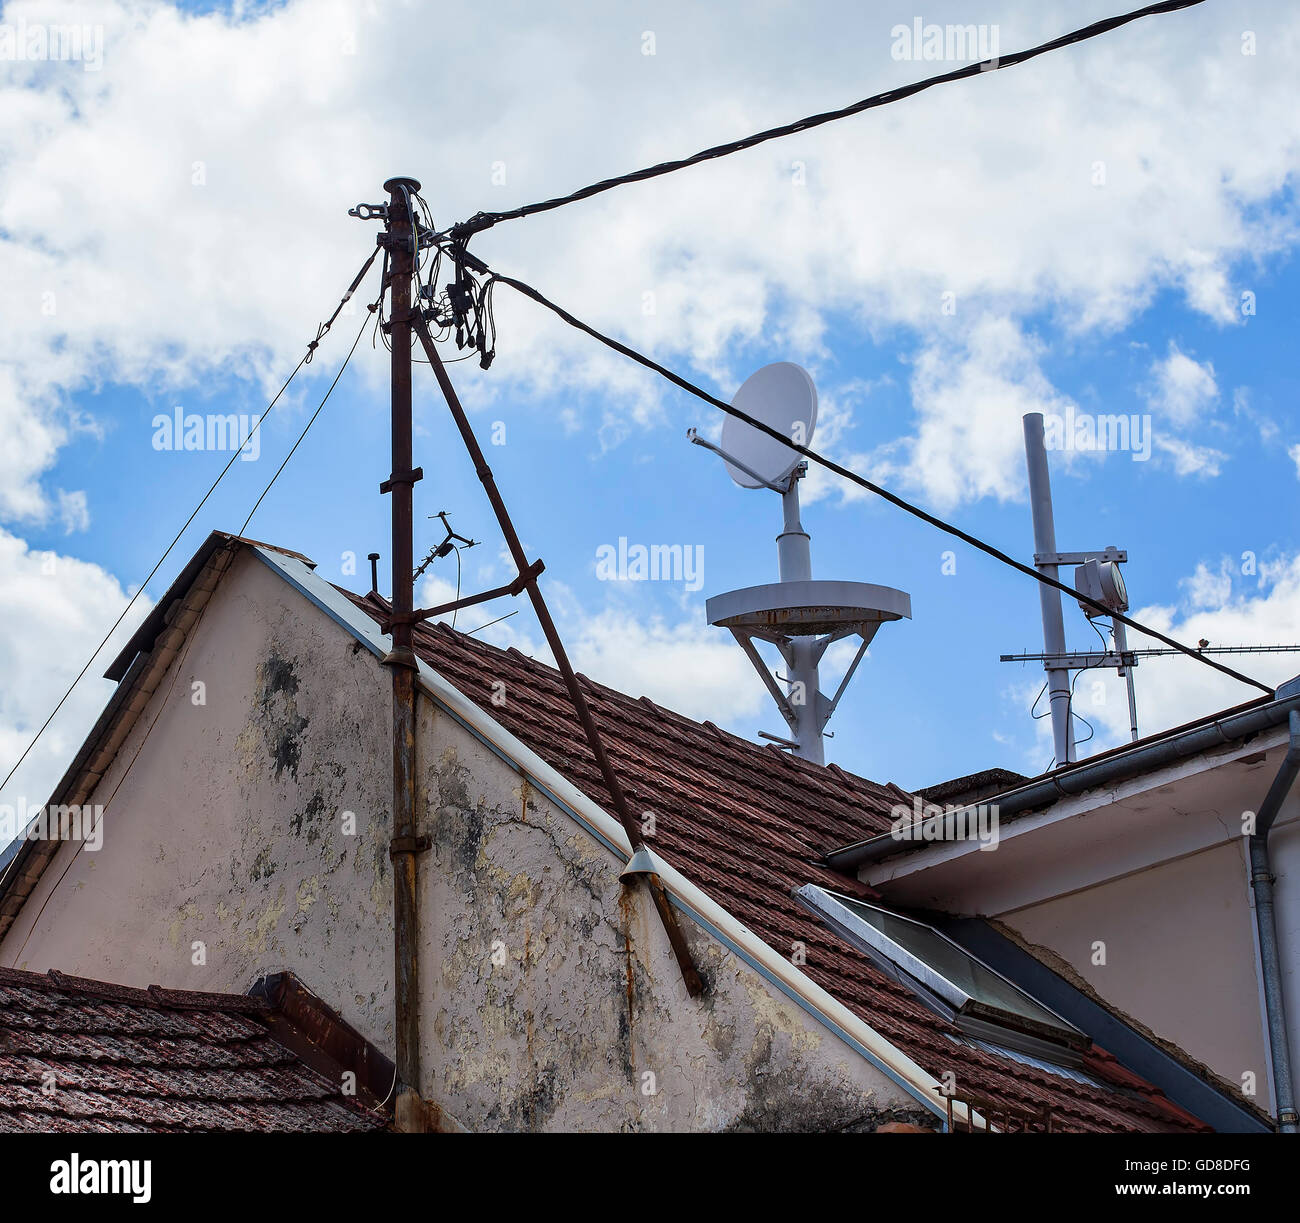 Telekommunikation-Antenne auf dem Dach mit elektrischen Kabeln. Stockfoto